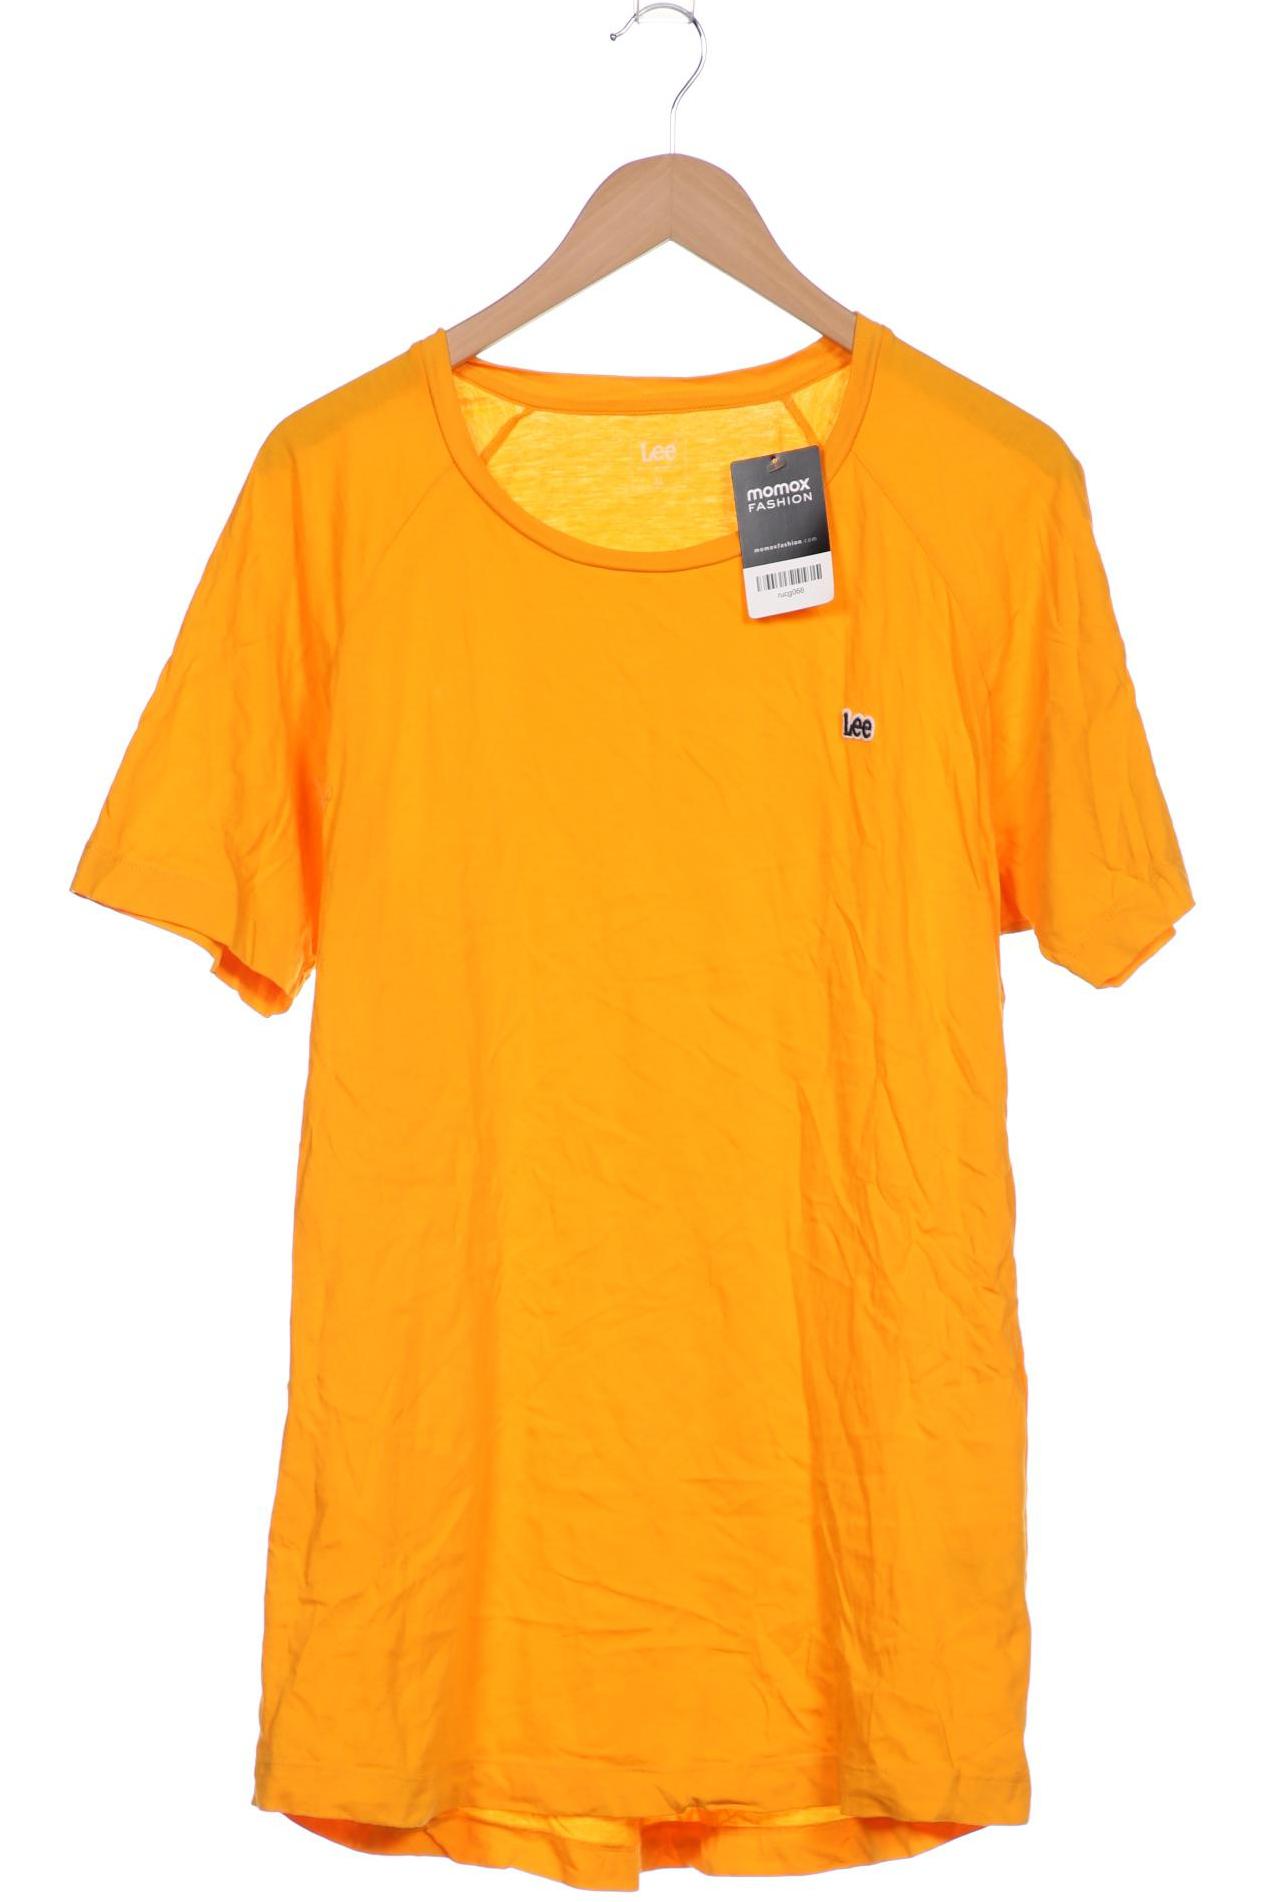 Lee Herren T-Shirt, orange, Gr. 54 von Lee